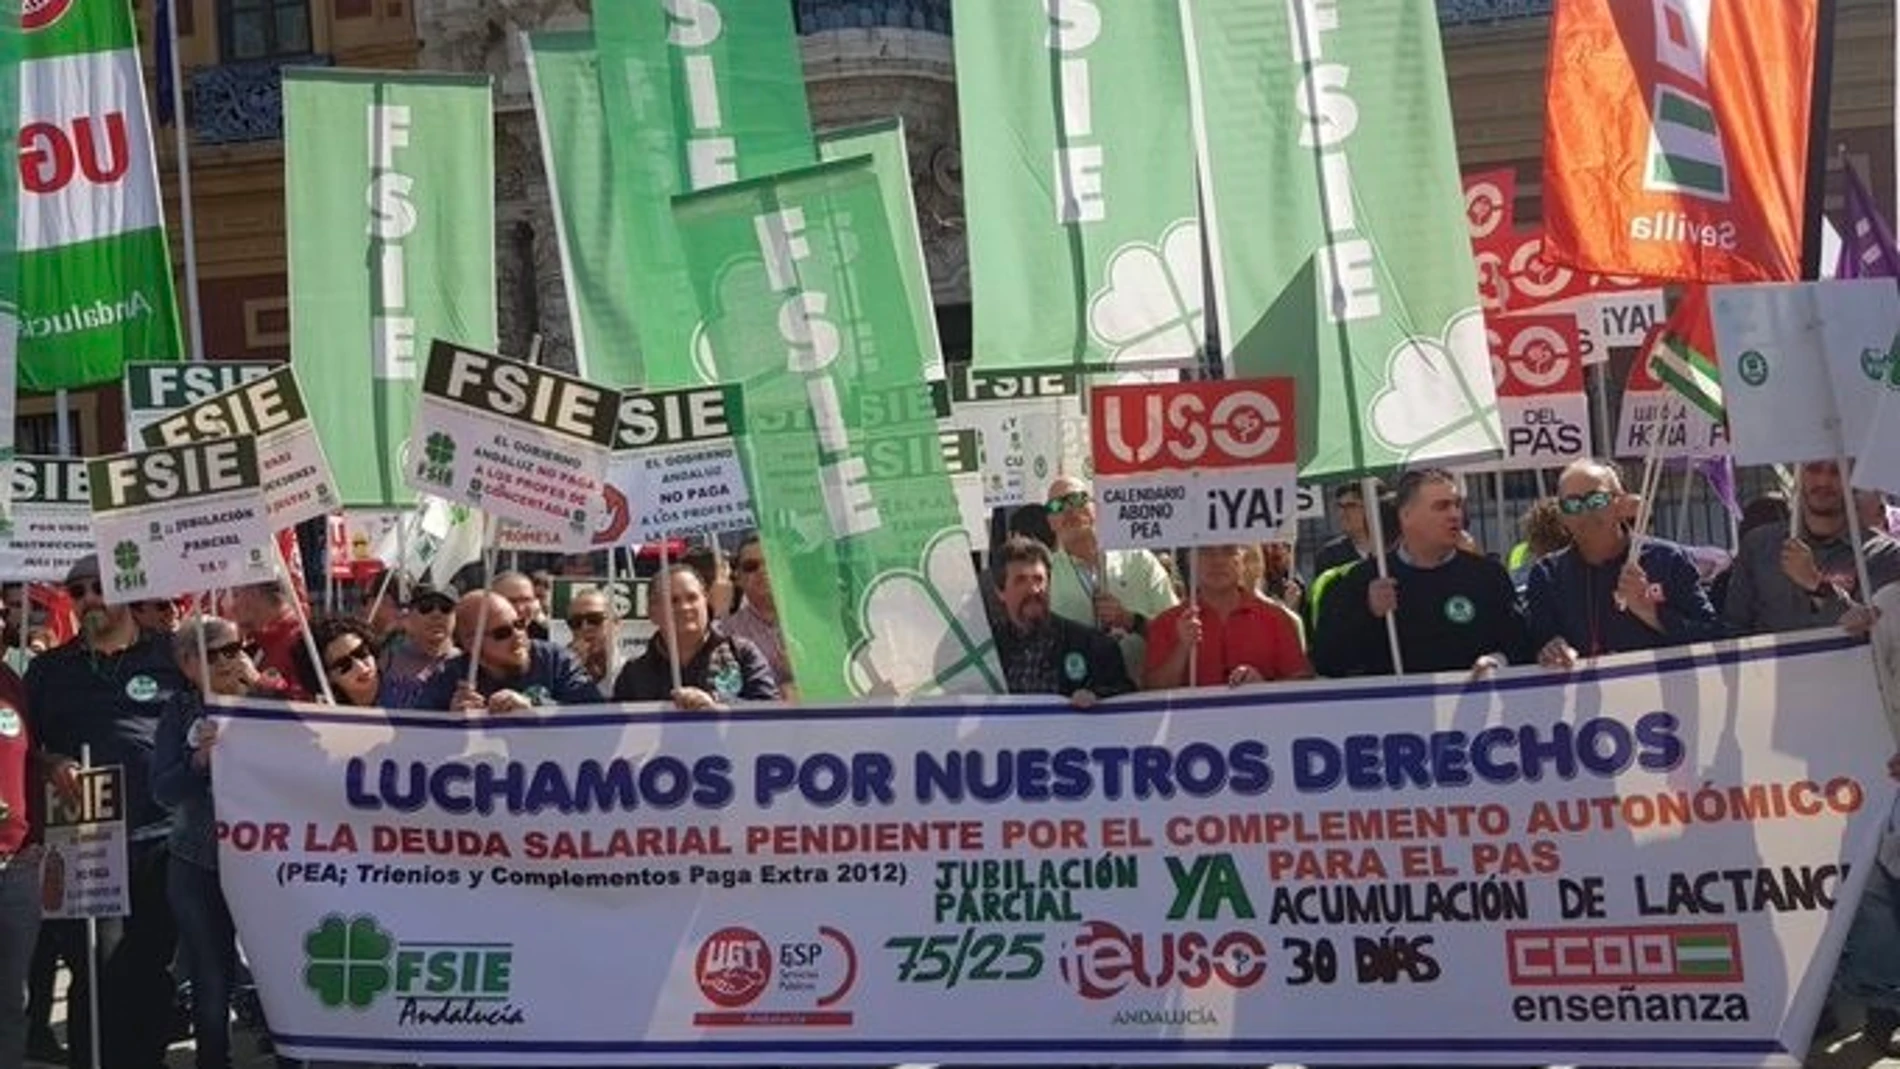 Unos 500 trabajadores de la concertada protestan en Sevilla para exigir a la Junta que "cumpla" sus promesas laborales